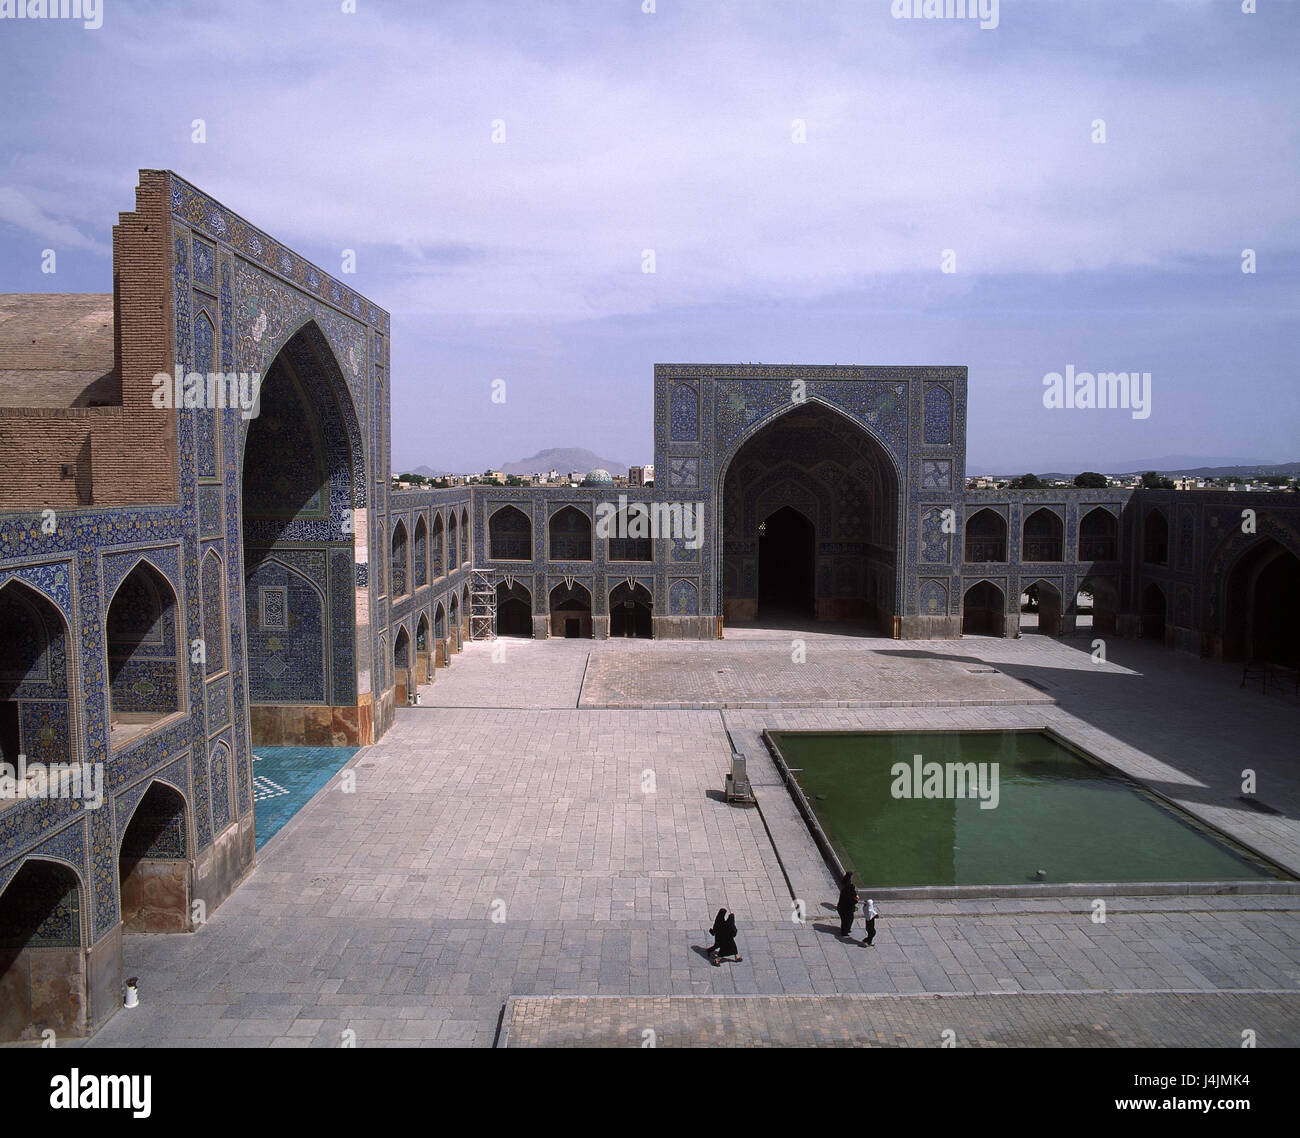 Iran, Isfahan, Imam der Moschee, Innenhof draußen, Moschee, Imam, Jami Abbasi, Kirche, islamische, Anbetung statt, glaube, Religion Stockfoto